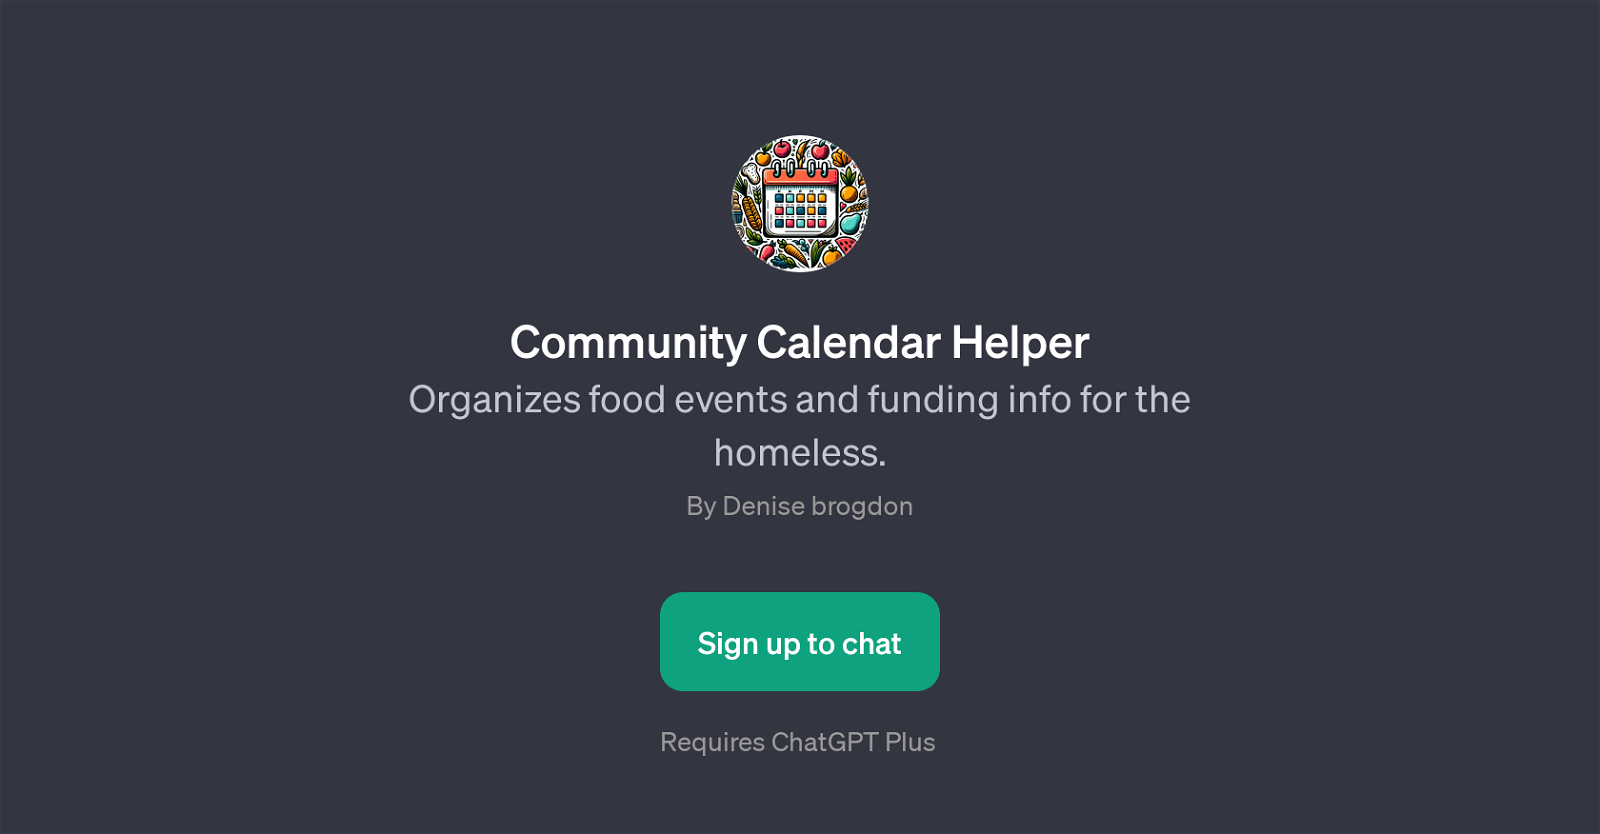 Community Calendar Helper website